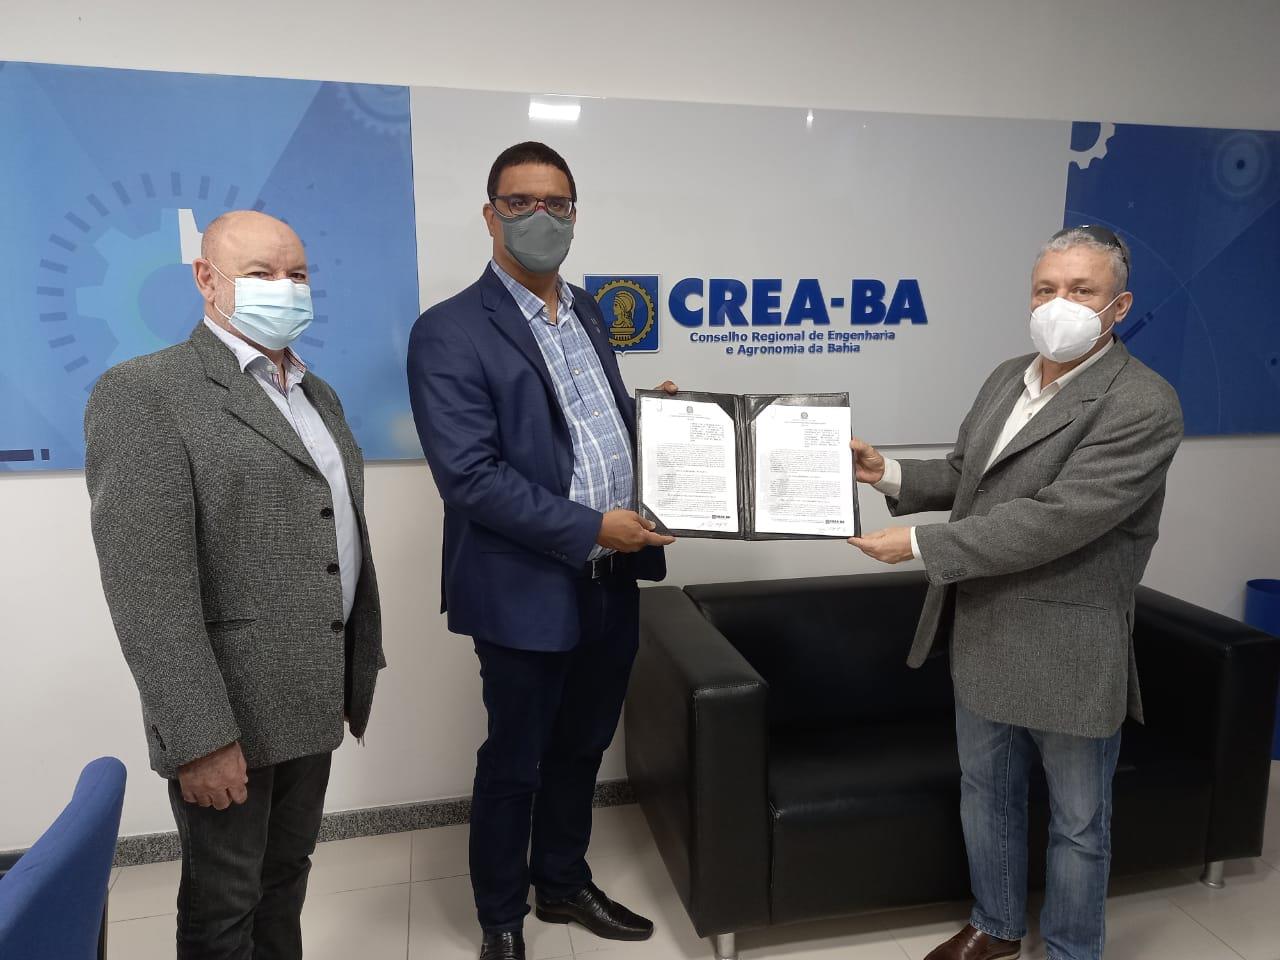 CREA-BA assina acordo de Cooperação com o Instituto gestão Brasil! Confira a matéria.